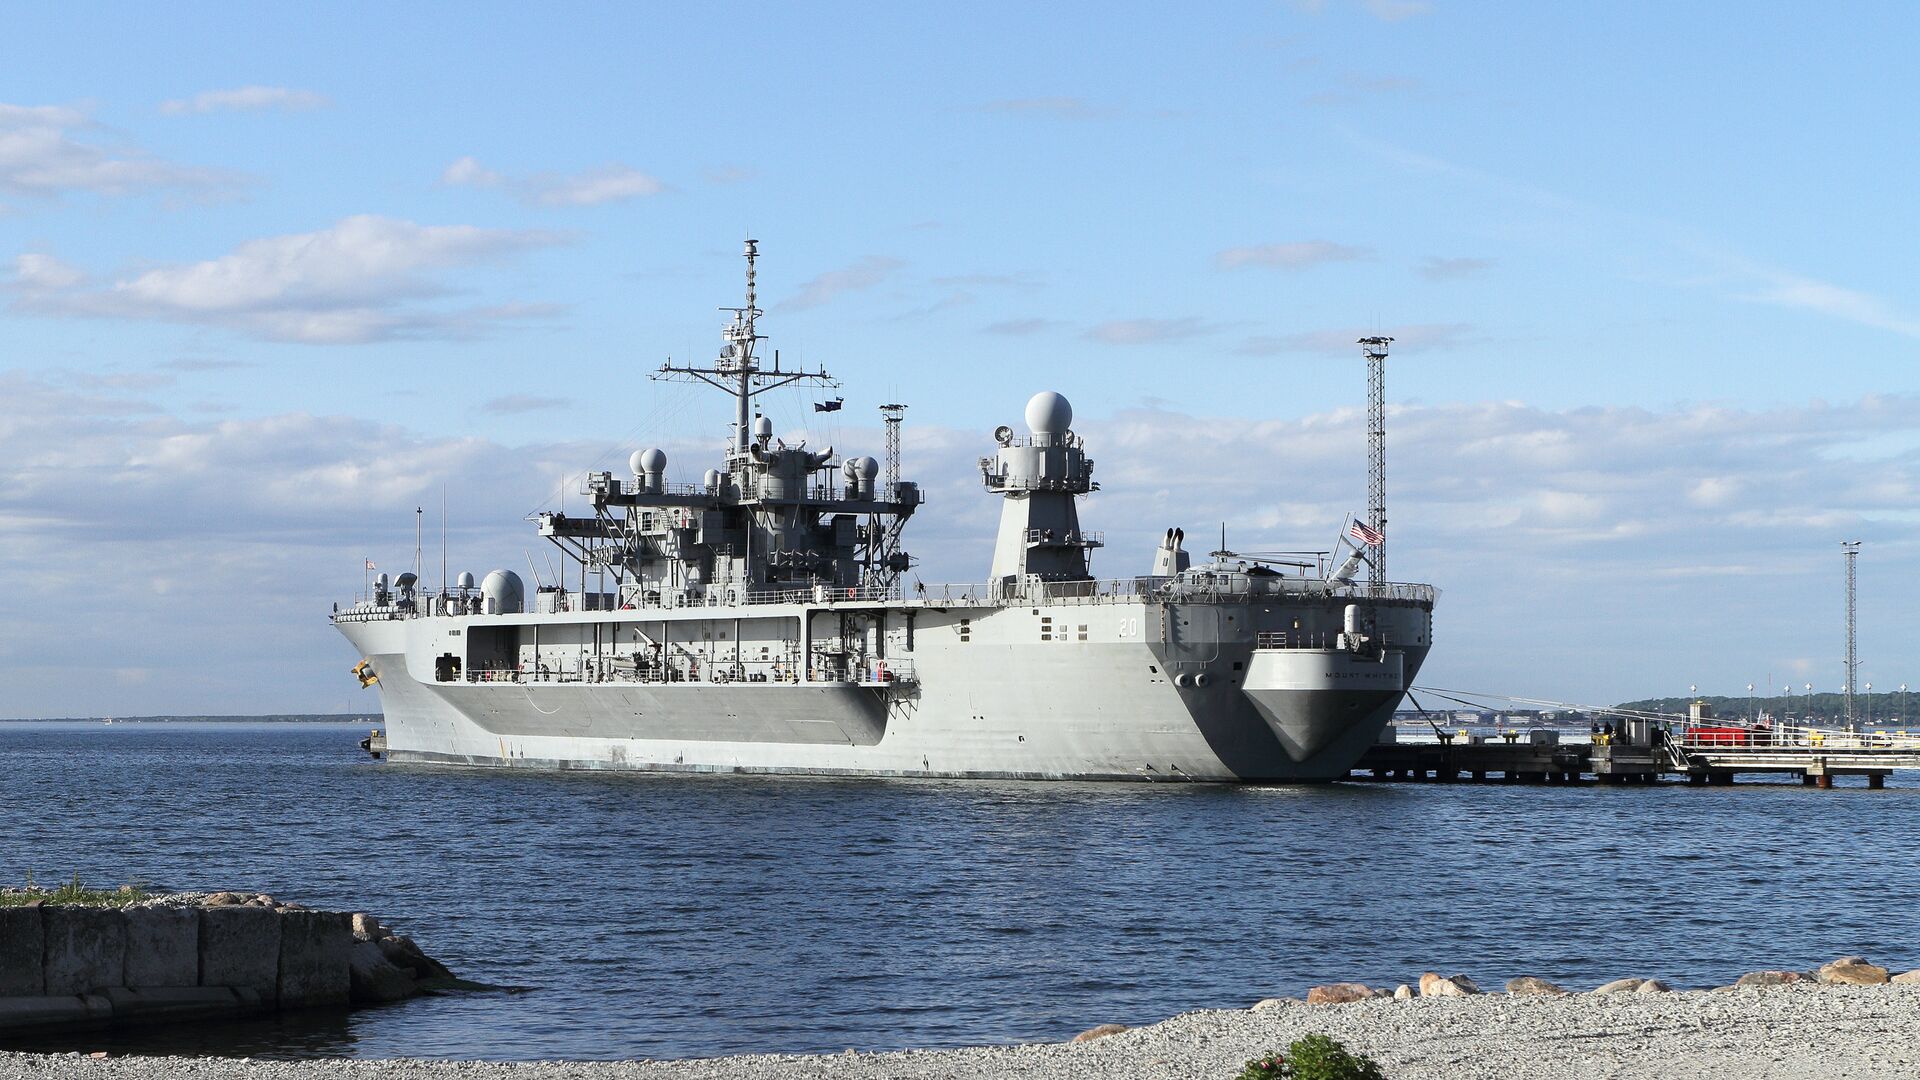 Флагманский корабль шестого флота США Mount Whitney, прибывший для участия в международных учениях ВМС НАТО Baltops, в порту Таллина. Июнь 2016 года  - РИА Новости, 1920, 04.10.2020